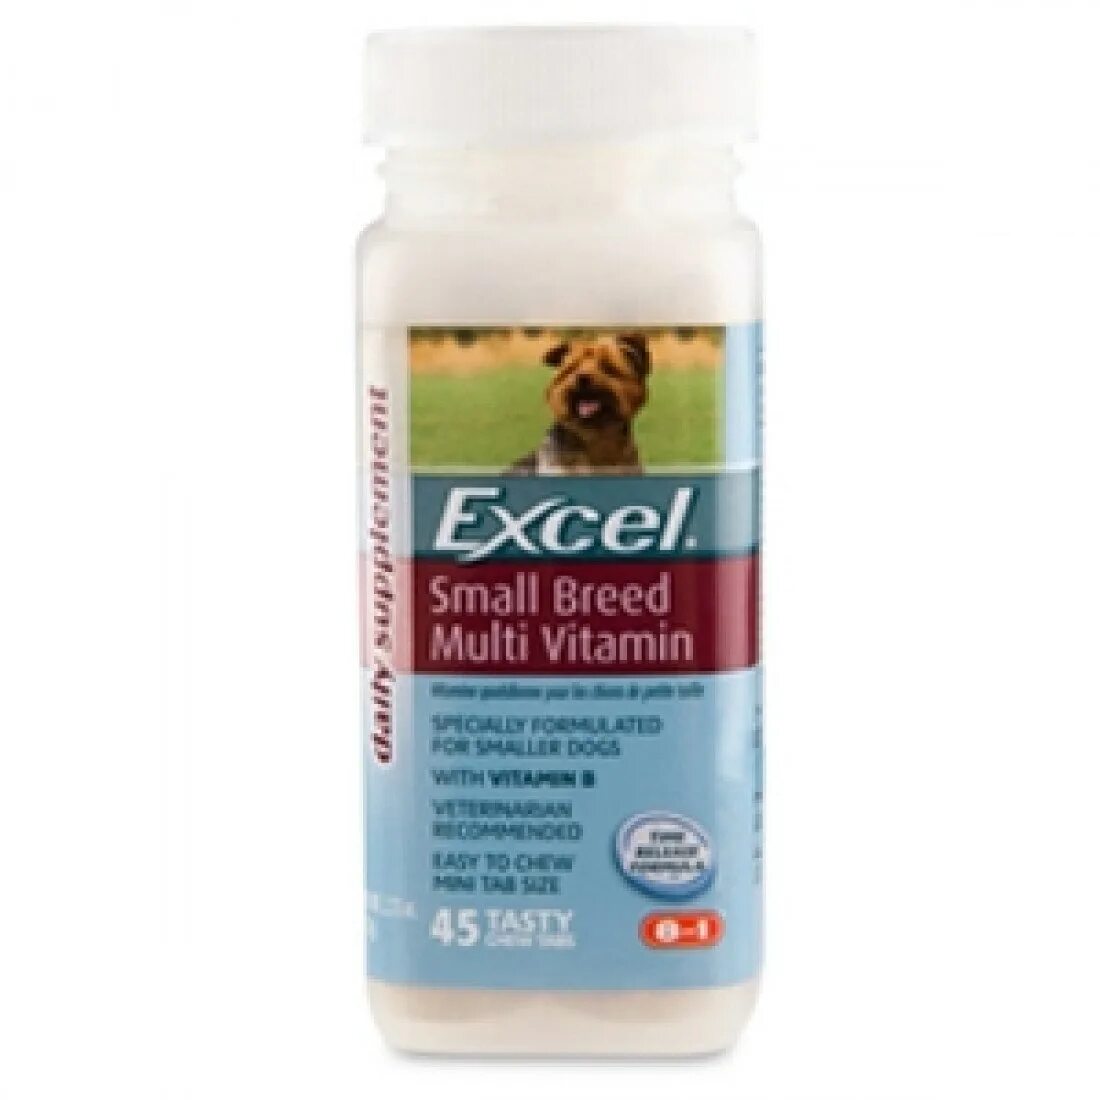 Витамины 8 в 1 эксель мультивитамины д/собак мелких пород 70таб.. Витамины 8 в 1 эксель мультивитамины д/щенков 100 таб.. 8in1 excel Multi Vitamin мультивитамины для собак. 8 В 1 эксель мультивитамины для щенков. Витамины 8 в 1 для собак купить